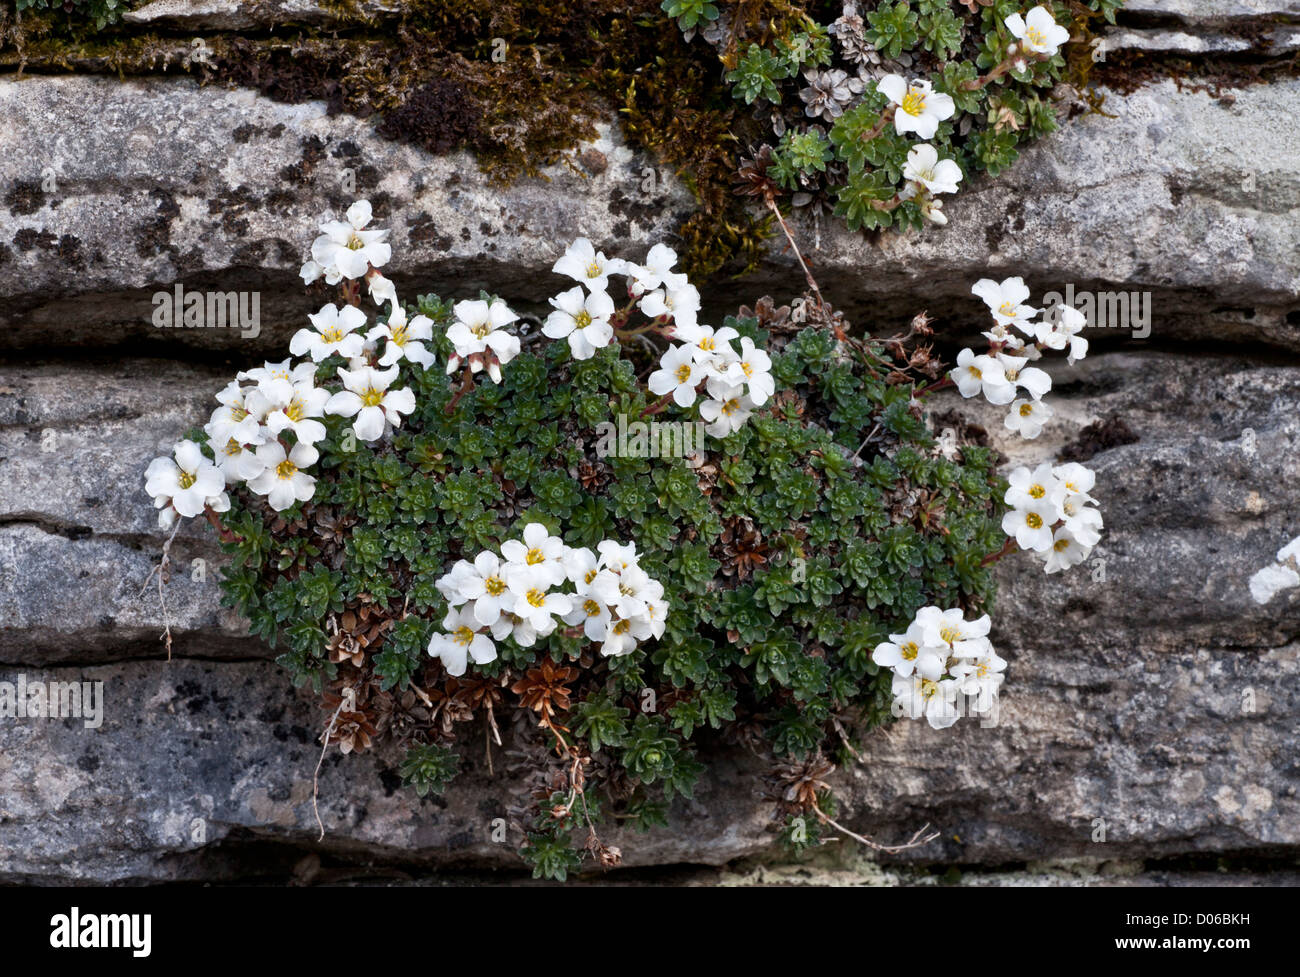 A mountain saxifrage, Saxifraga marginata, on limestone at Vikos Gorge, north-west Greece Stock Photo